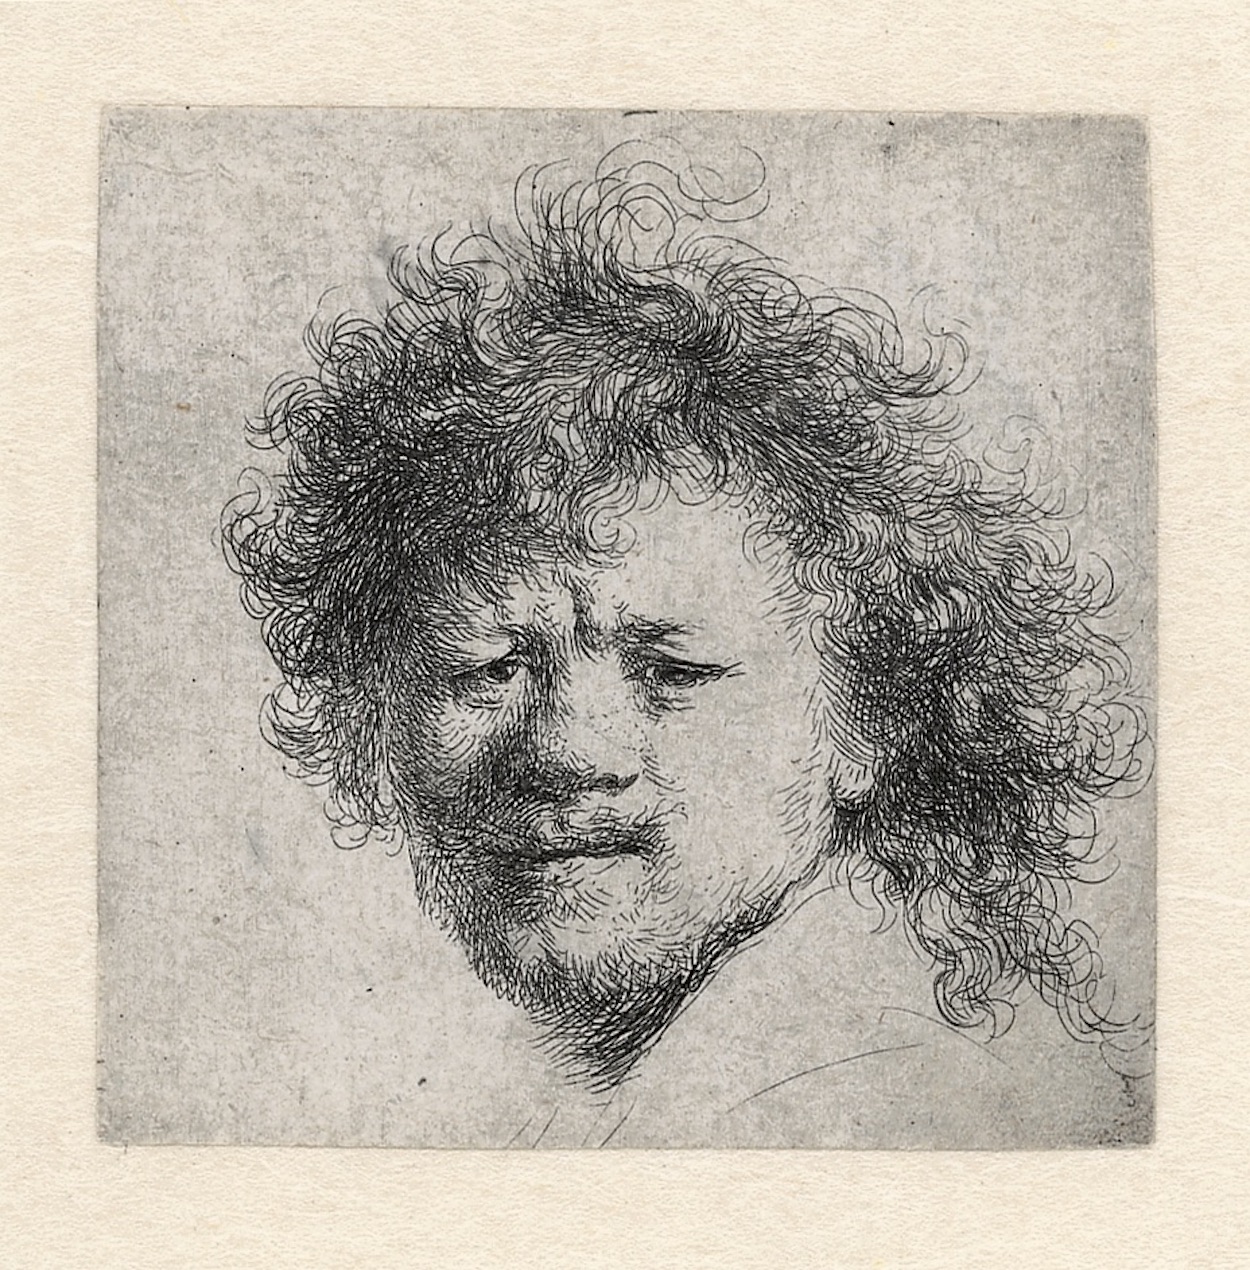 Auto-retrato com cabelo emaranhado by Rembrandt van Rijn - Aprox. 1631 - 90 × 76 mm Rembrandthuis